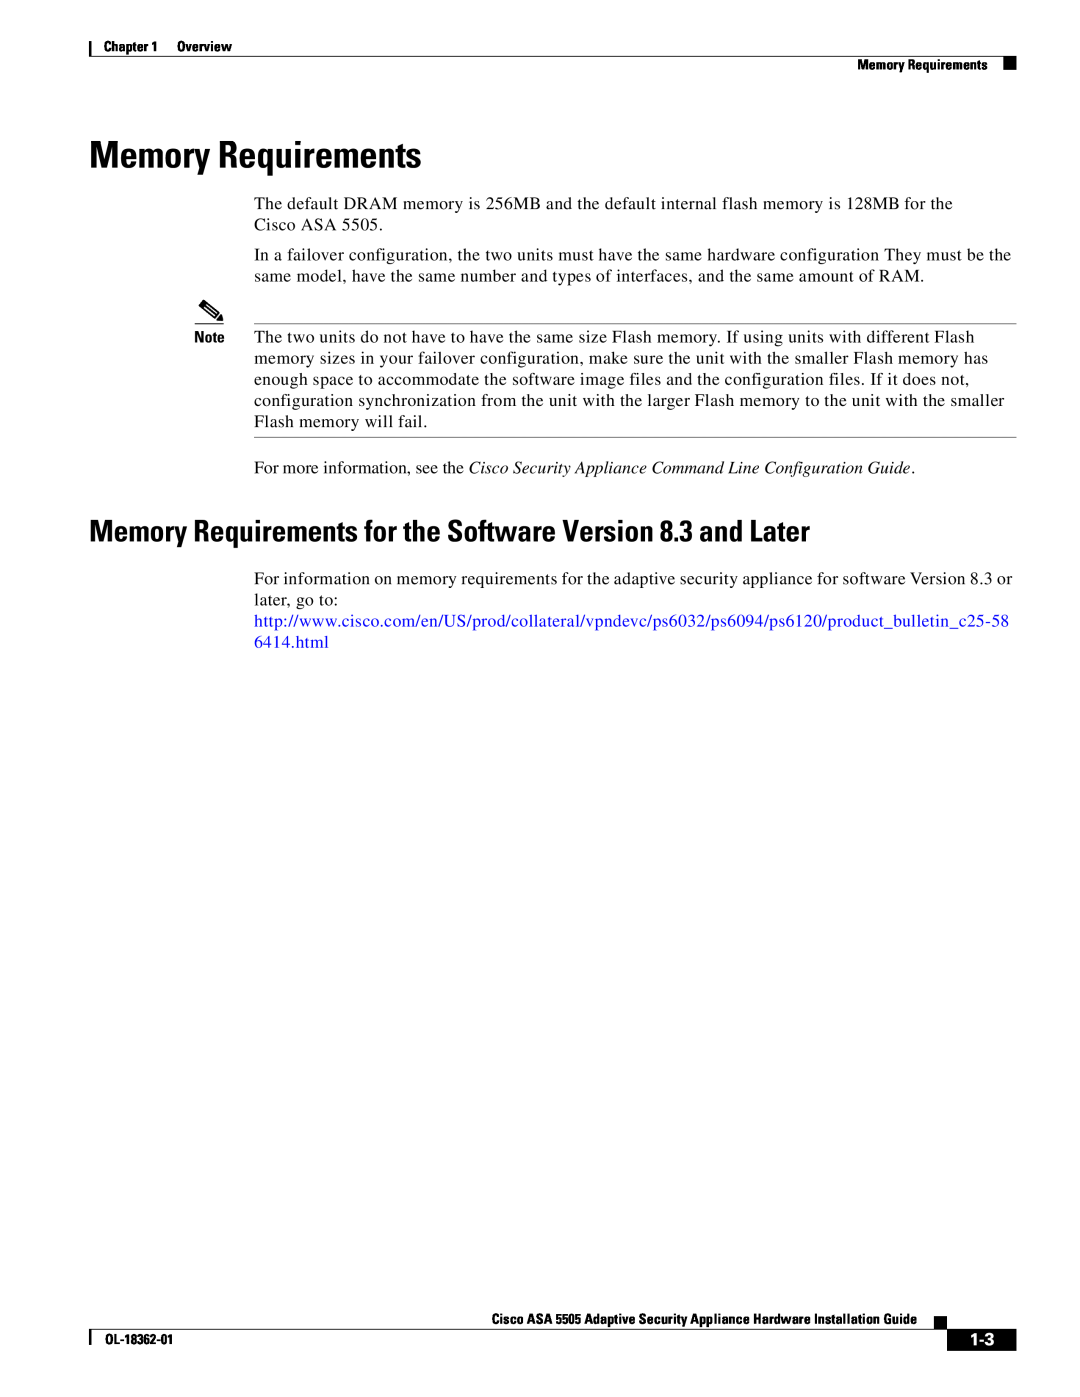 Cisco Systems ASA 5505BUNK9, ASA5505BUNK9, ASA5505K8RF manual Overview Memory Requirements, OL-18362-01 